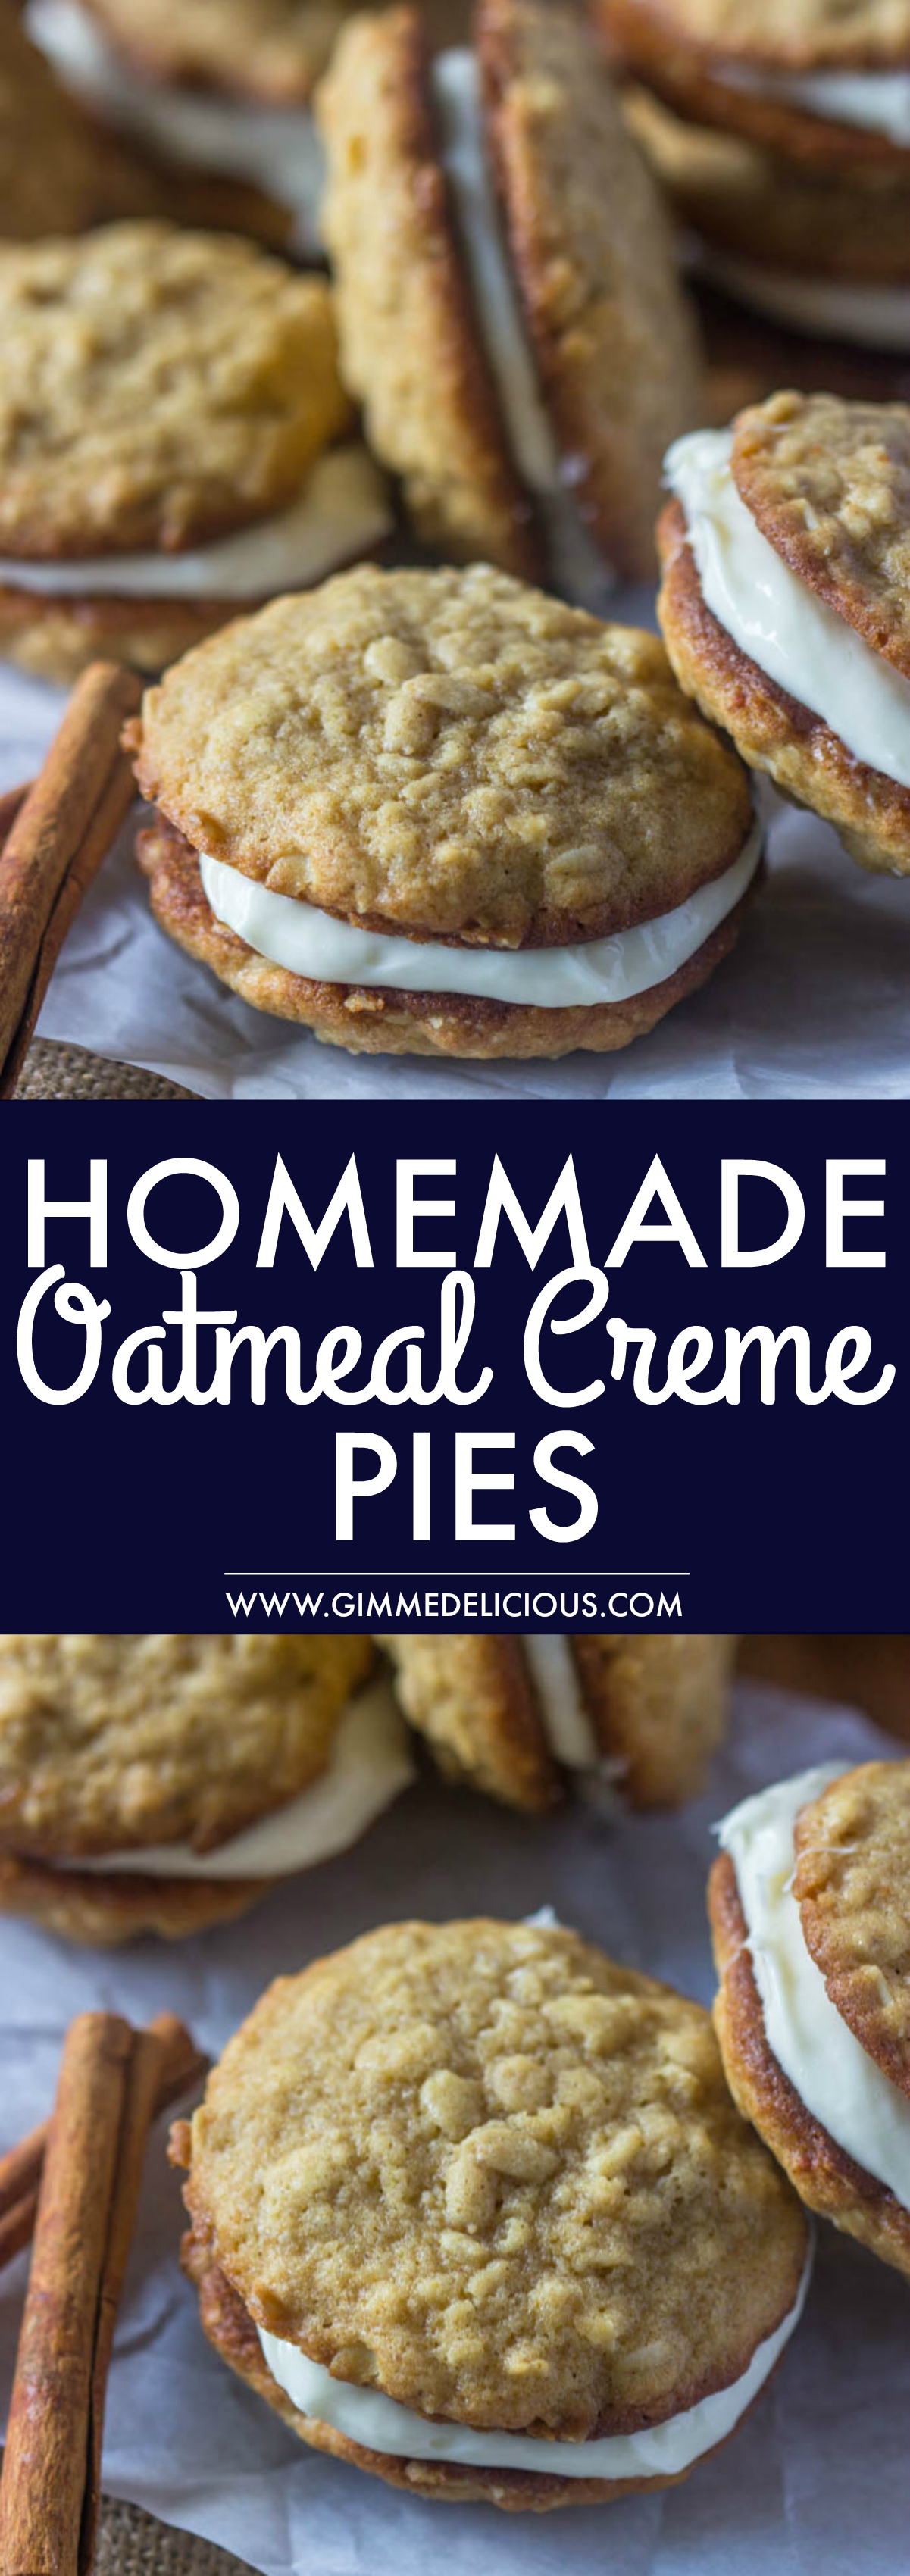 Homemade Oatmeal Creme Pies